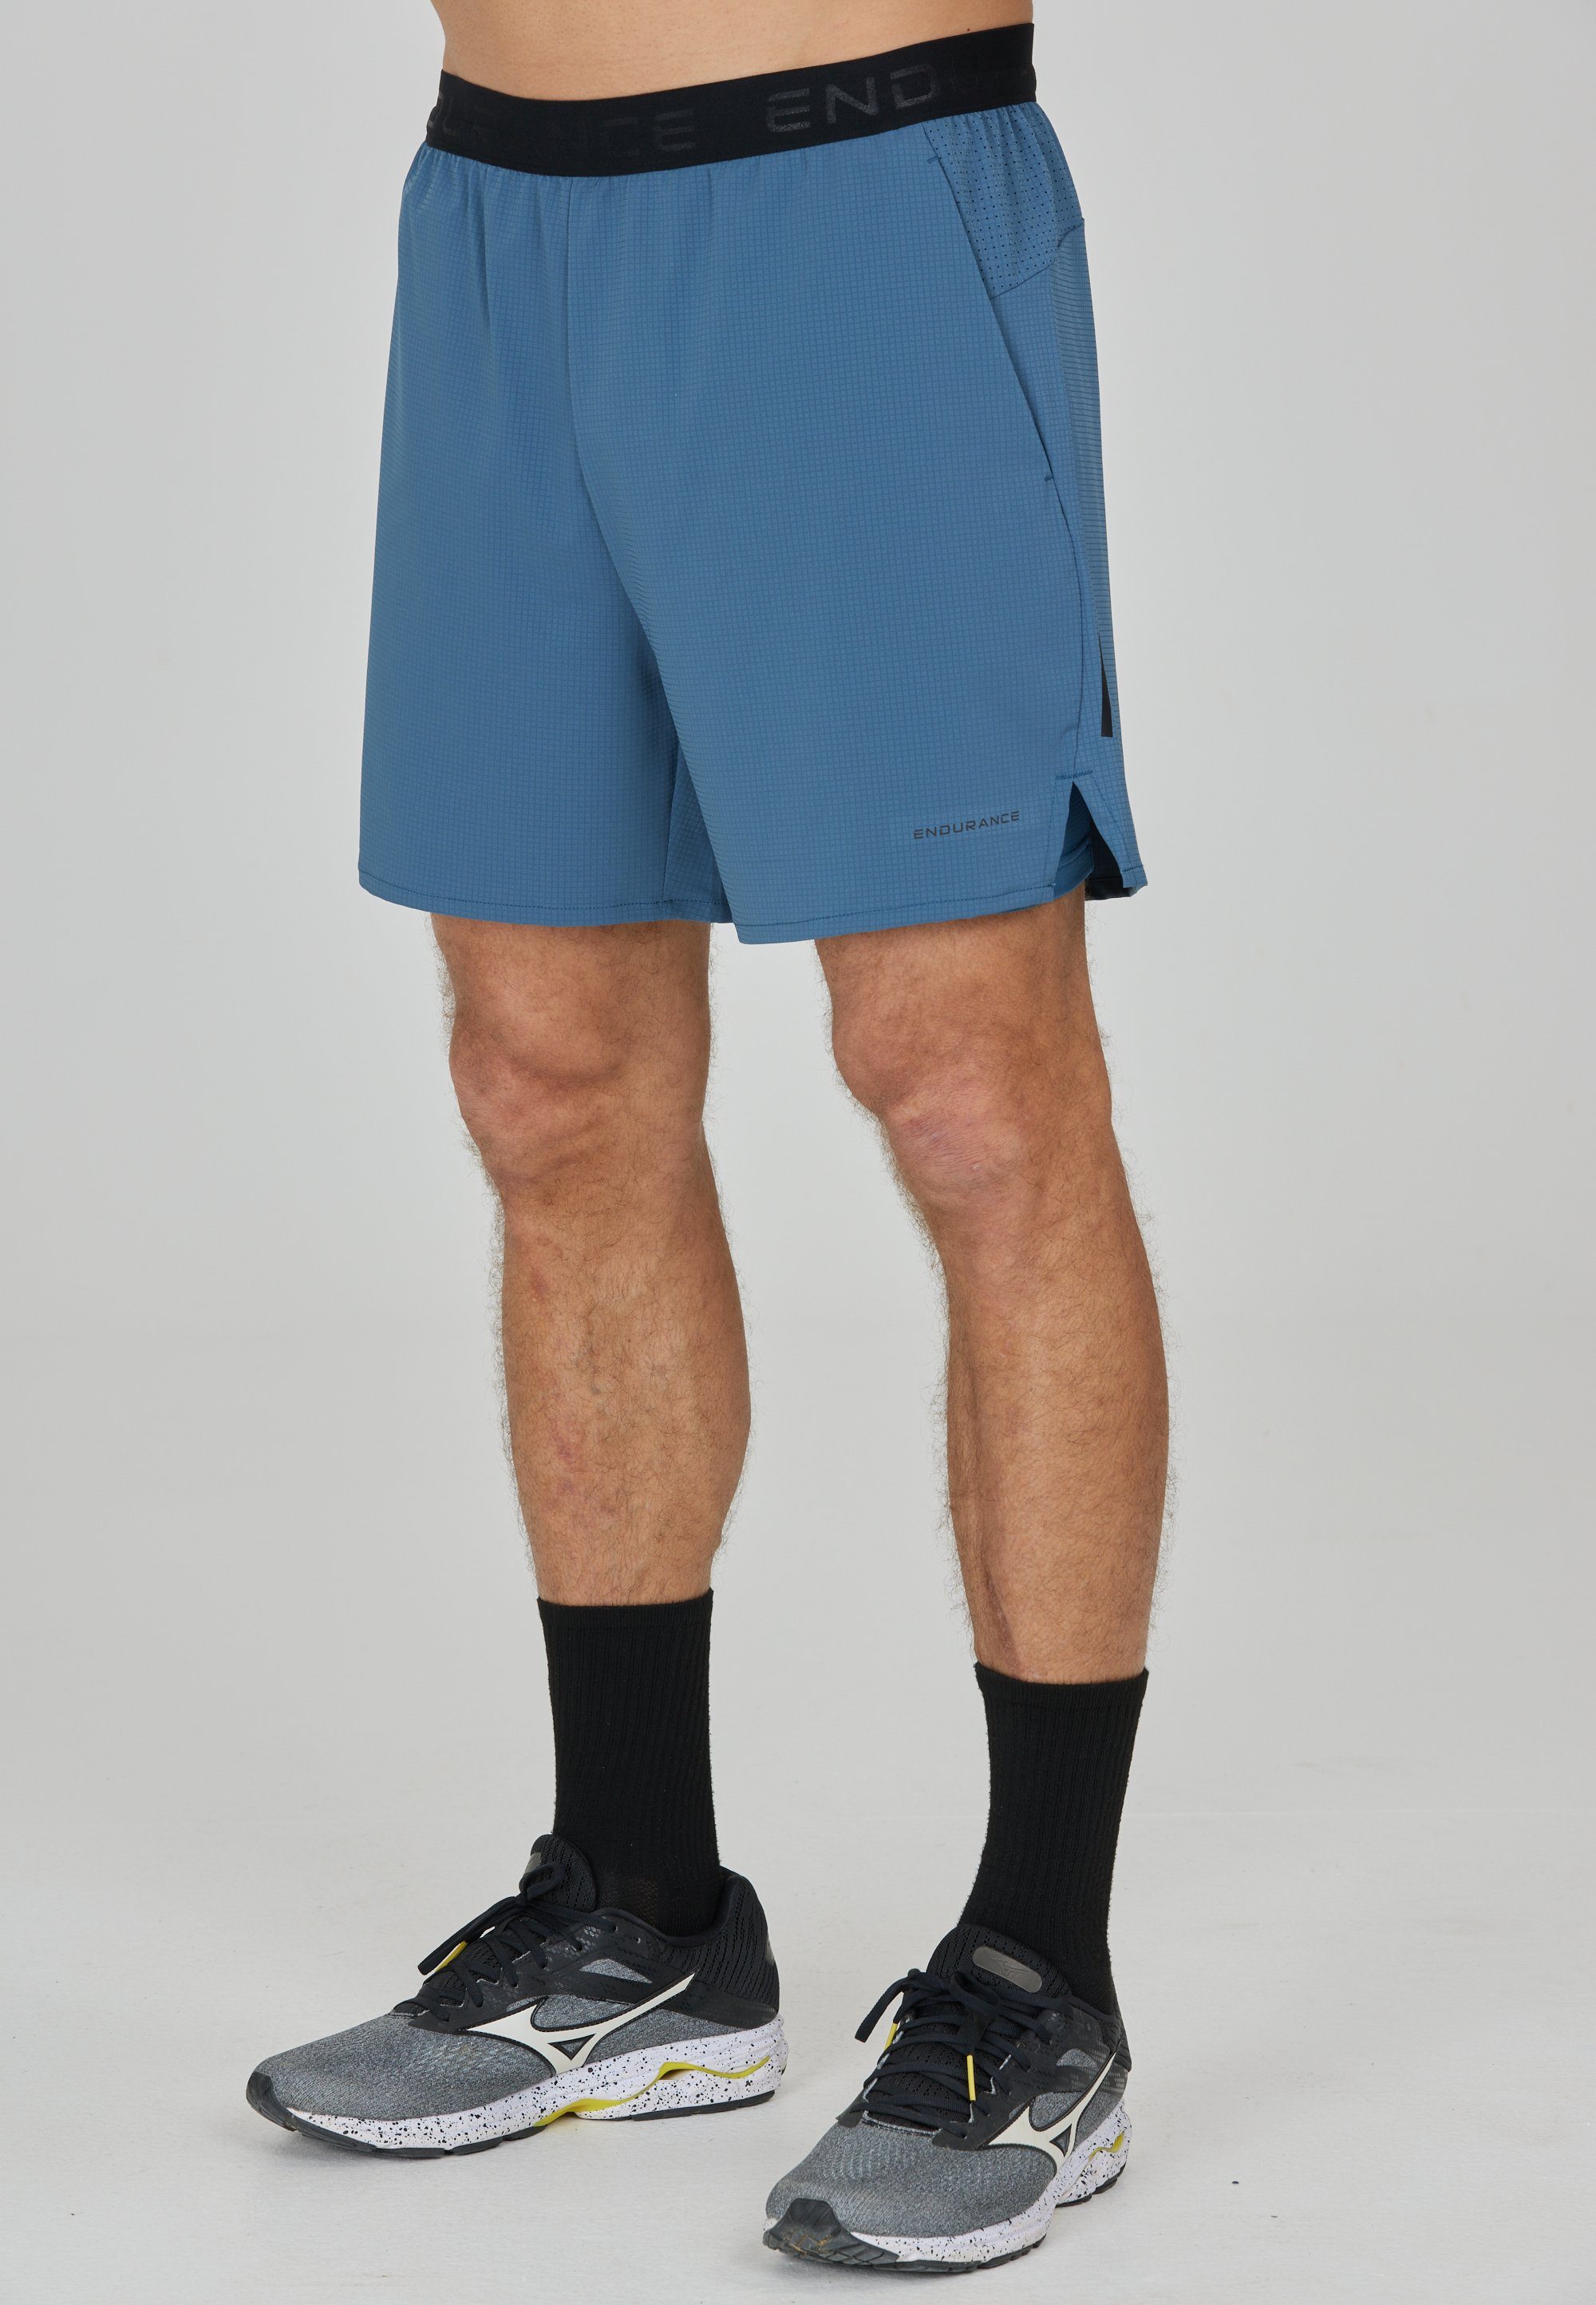 ENDURANCE Shorts Air mit Tights integrierter blau